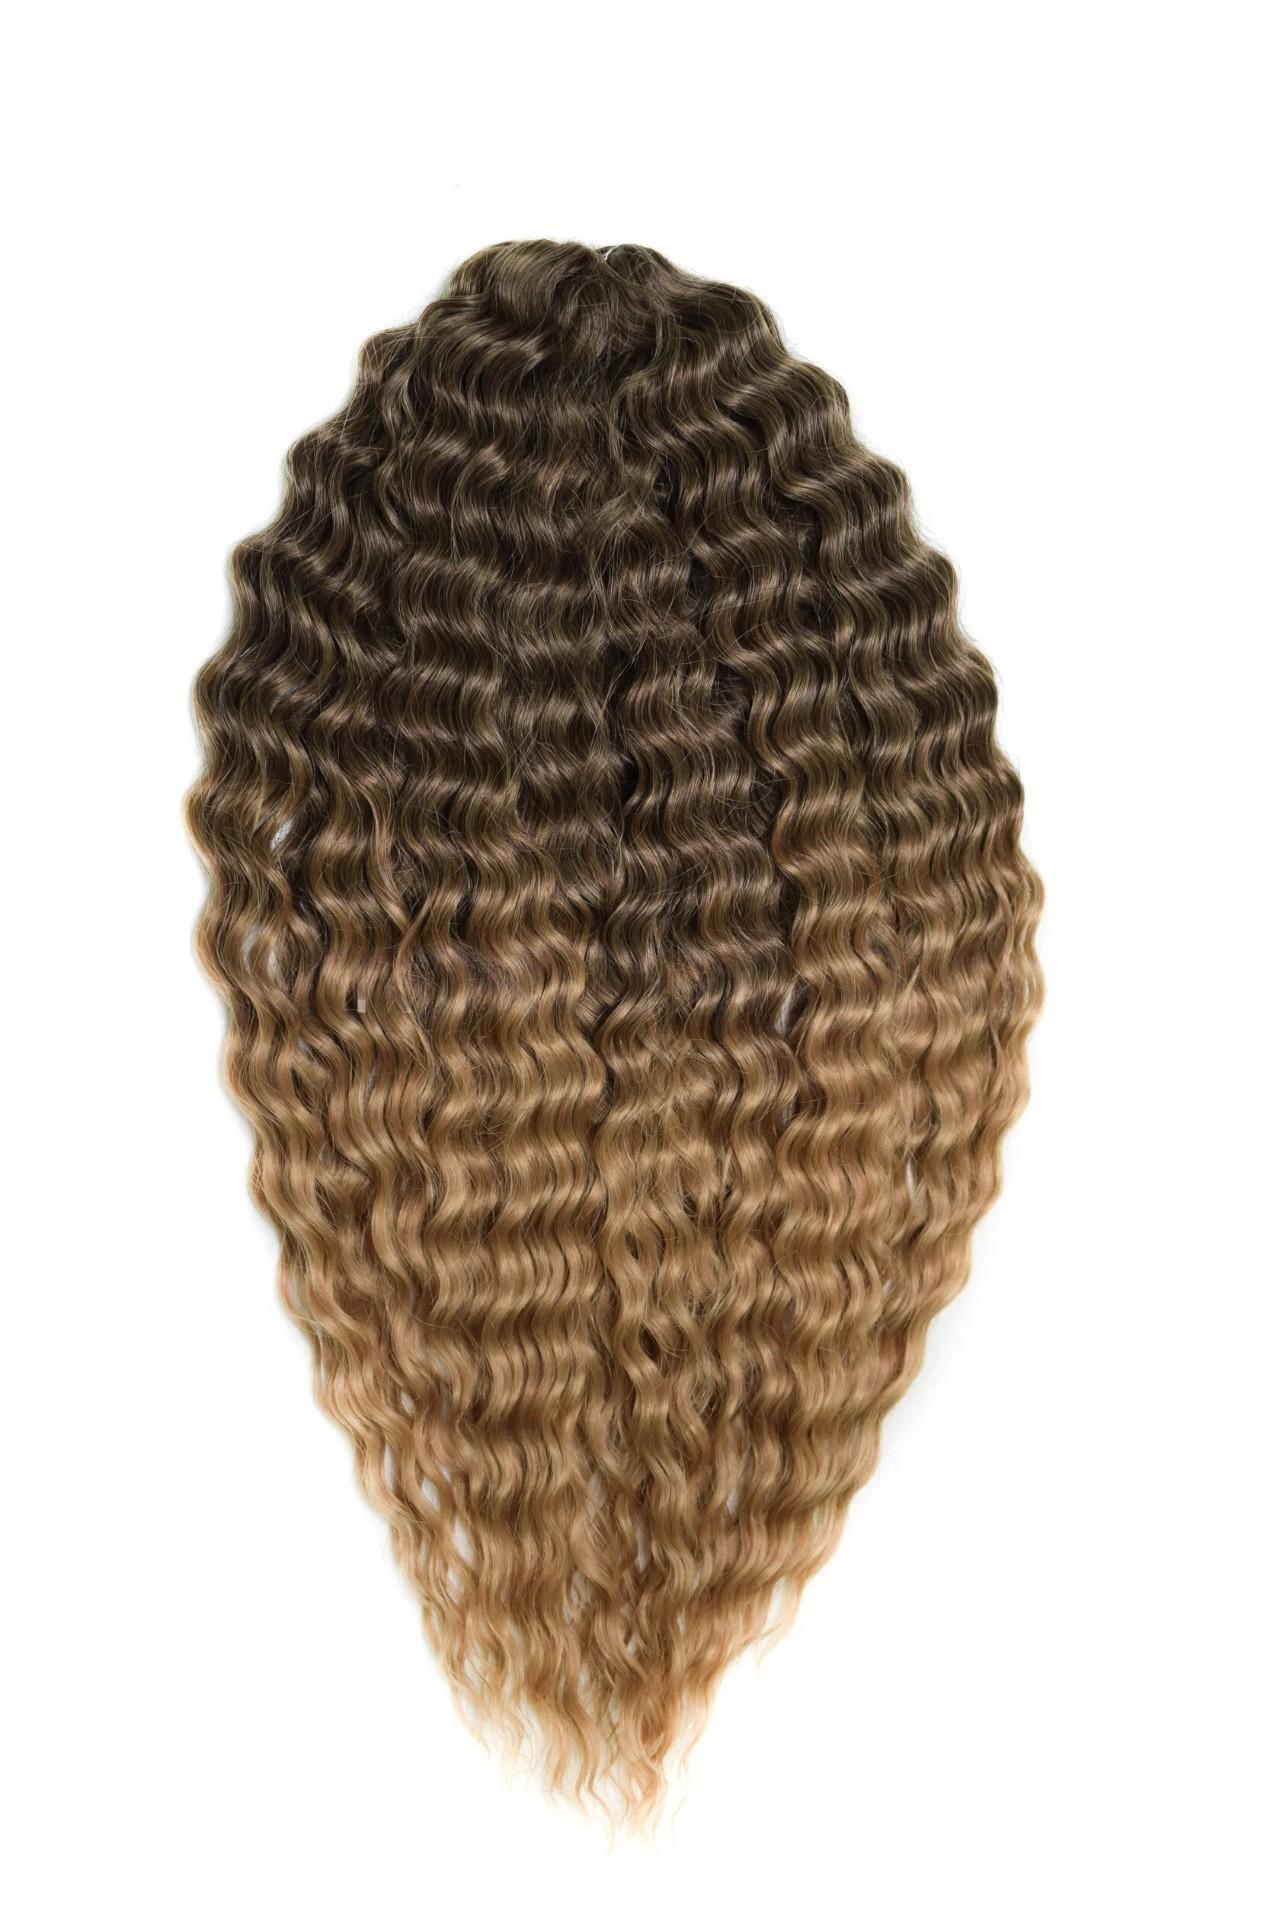 Афрокудри для плетения волос Ariel цвет T8 60 русый длина 55см вес 300г афрокудри для плетения волос ariel ариэль fire оранжевый длина 66см вес 300г